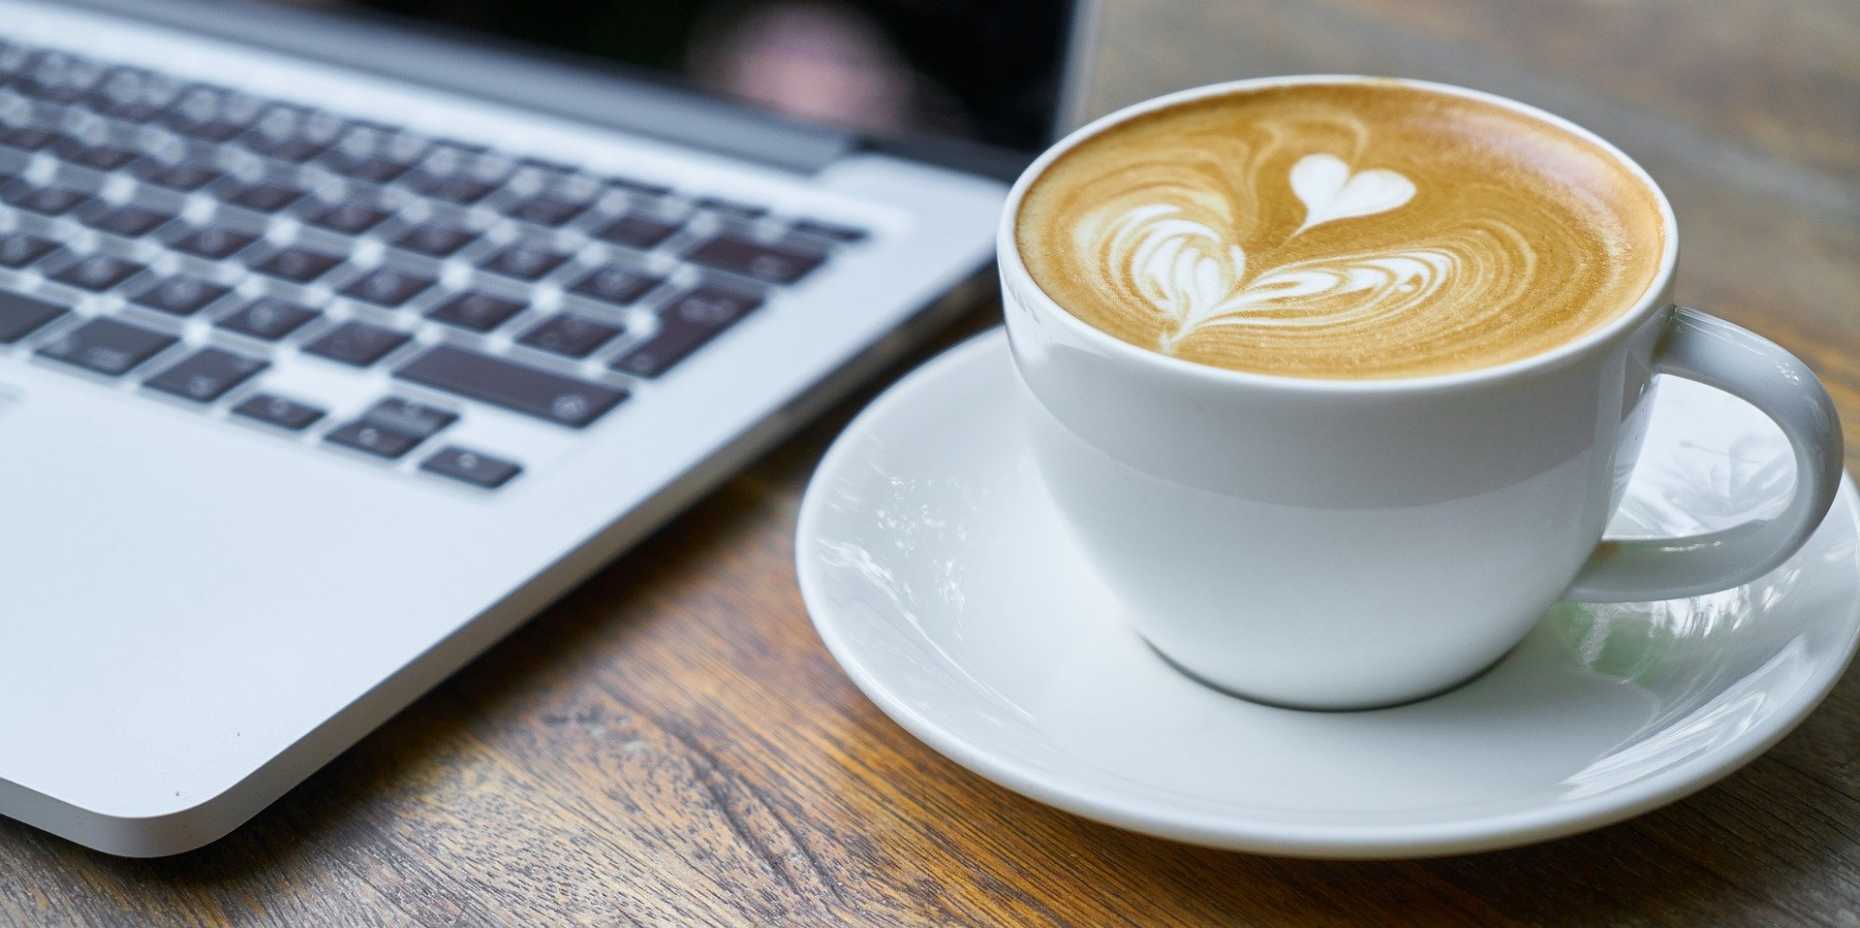 Kaffeetasse neben MacBook auf Holztisch